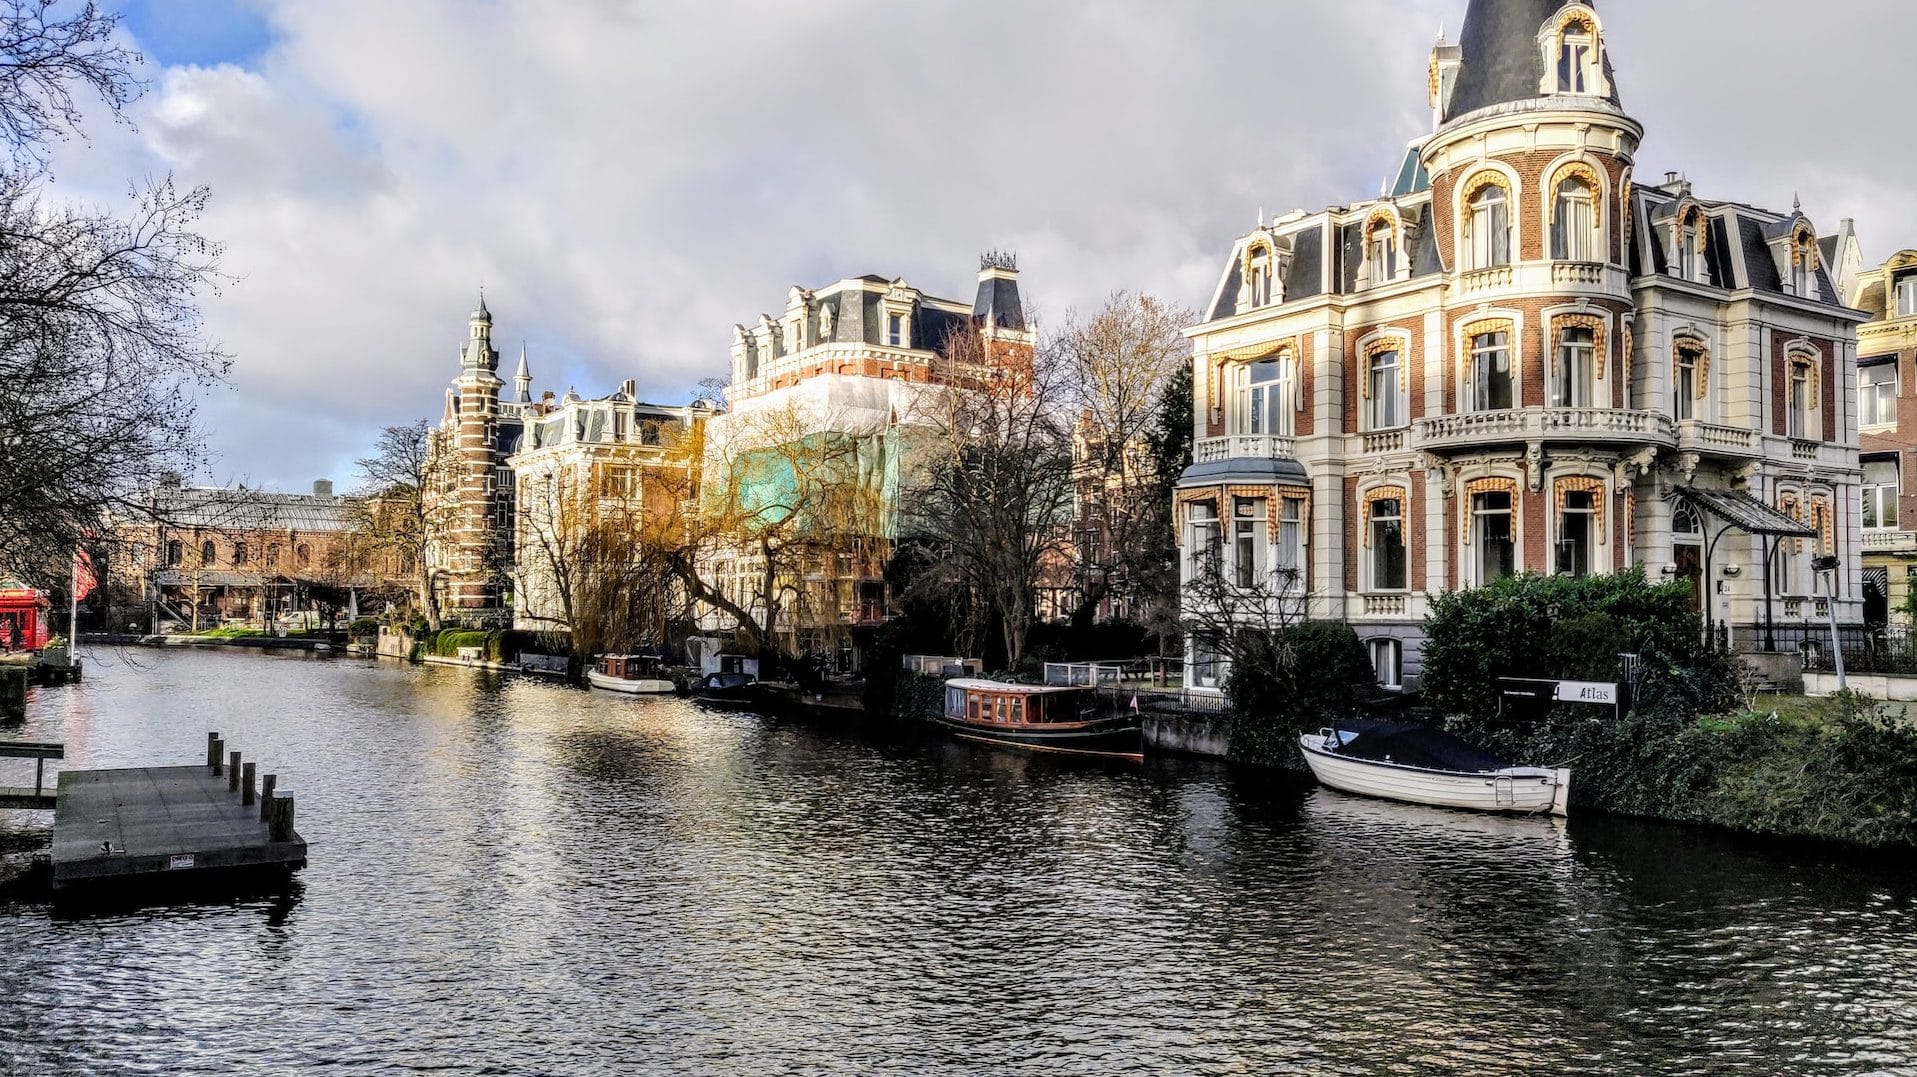 Vista dels canals al voltant de Leidseplein, Amsterdam